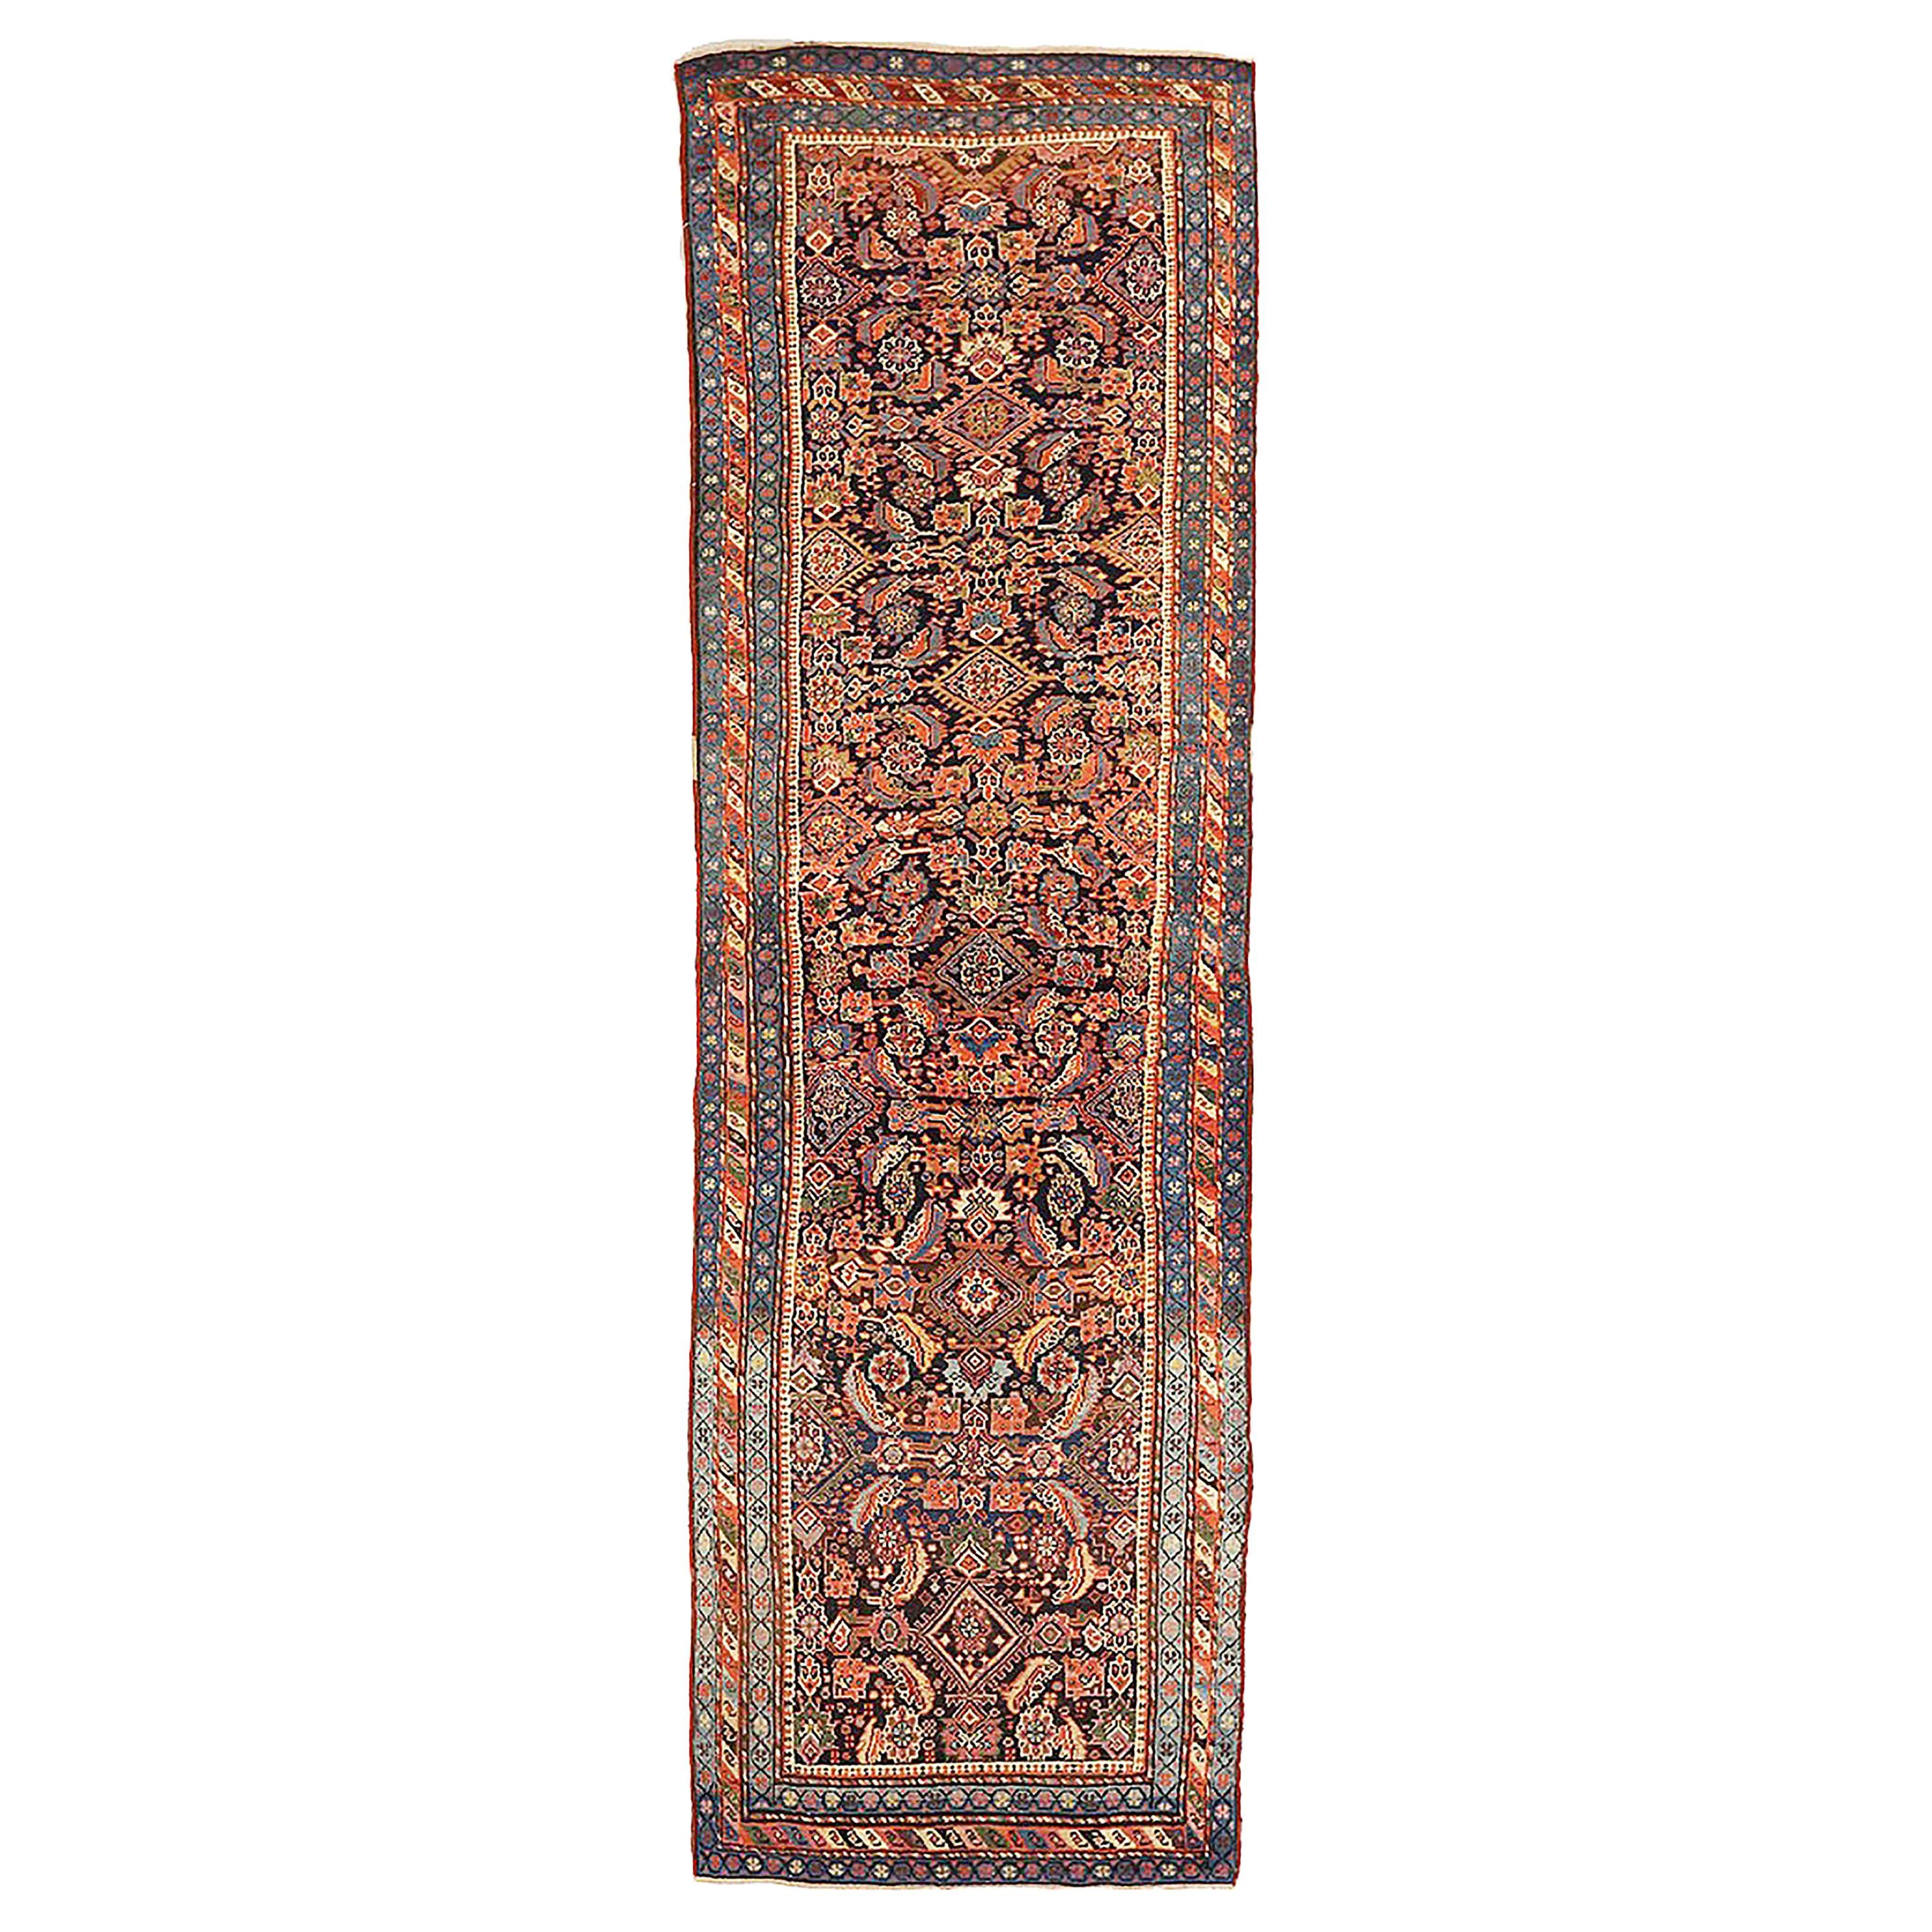 Antique tapis persan Azerbaïdjan Runner avec détails floraux ivoire et bleu